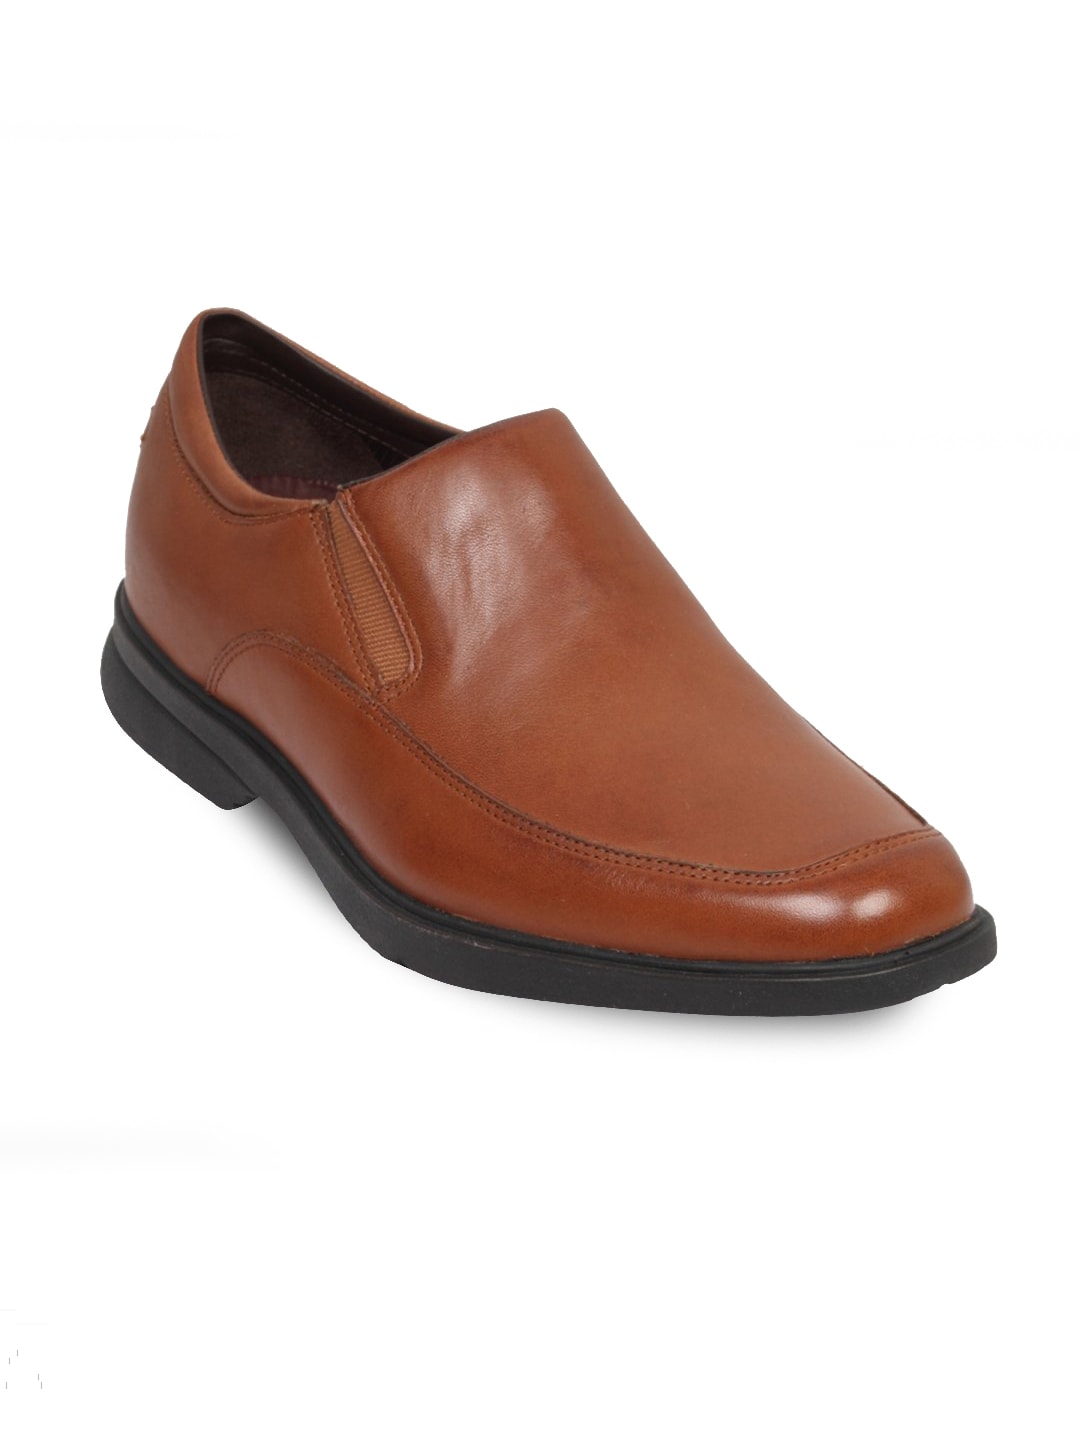 Rockport Men's Aderner Friar Brown Shoe